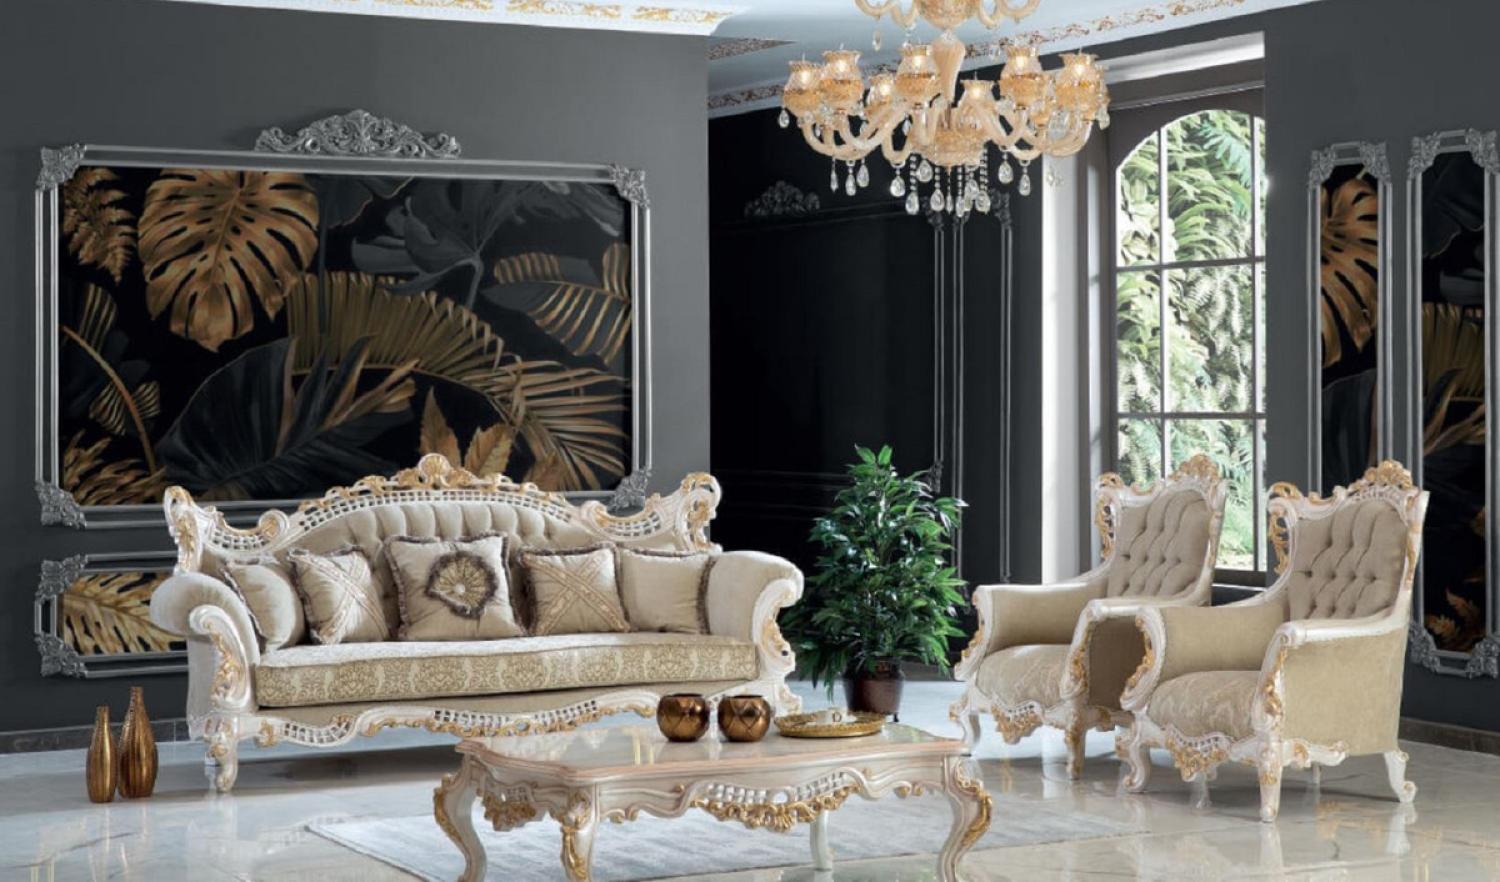 Casa Padrino Luxus Barock Wohnzimmer Set Greige / Weiß / Gold - 2 Sofas & 2 Sessel & 1 Couchtisch - Handgefertigte Wohnzimmer Möbel im Barockstil - Edel & Prunkvoll Bild 1